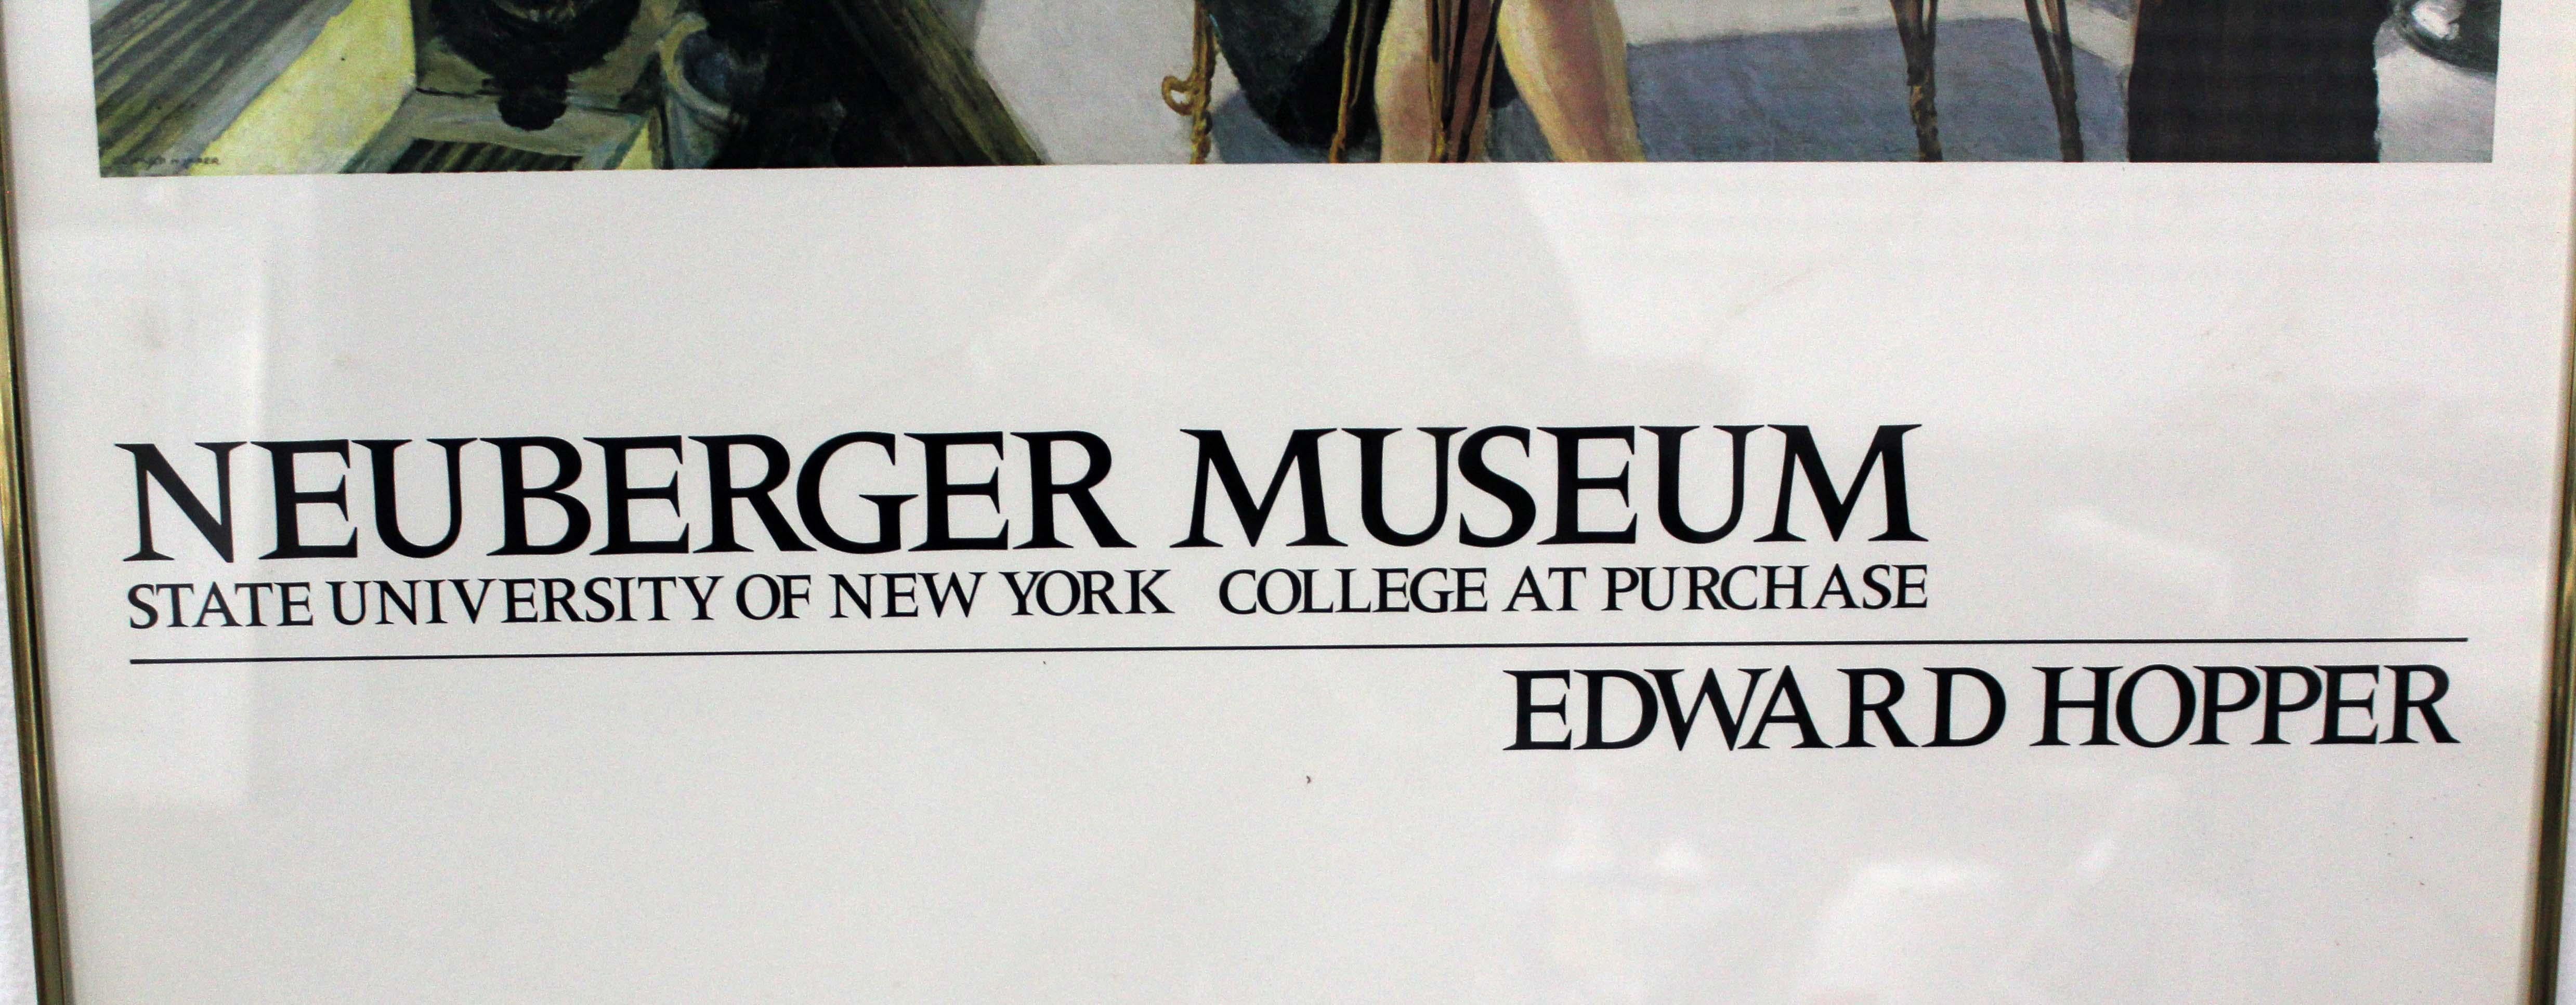 Edward Hopper The Barber Shop Neuberger Museum Vintage Exhibition Poster 1981 For Sale 1